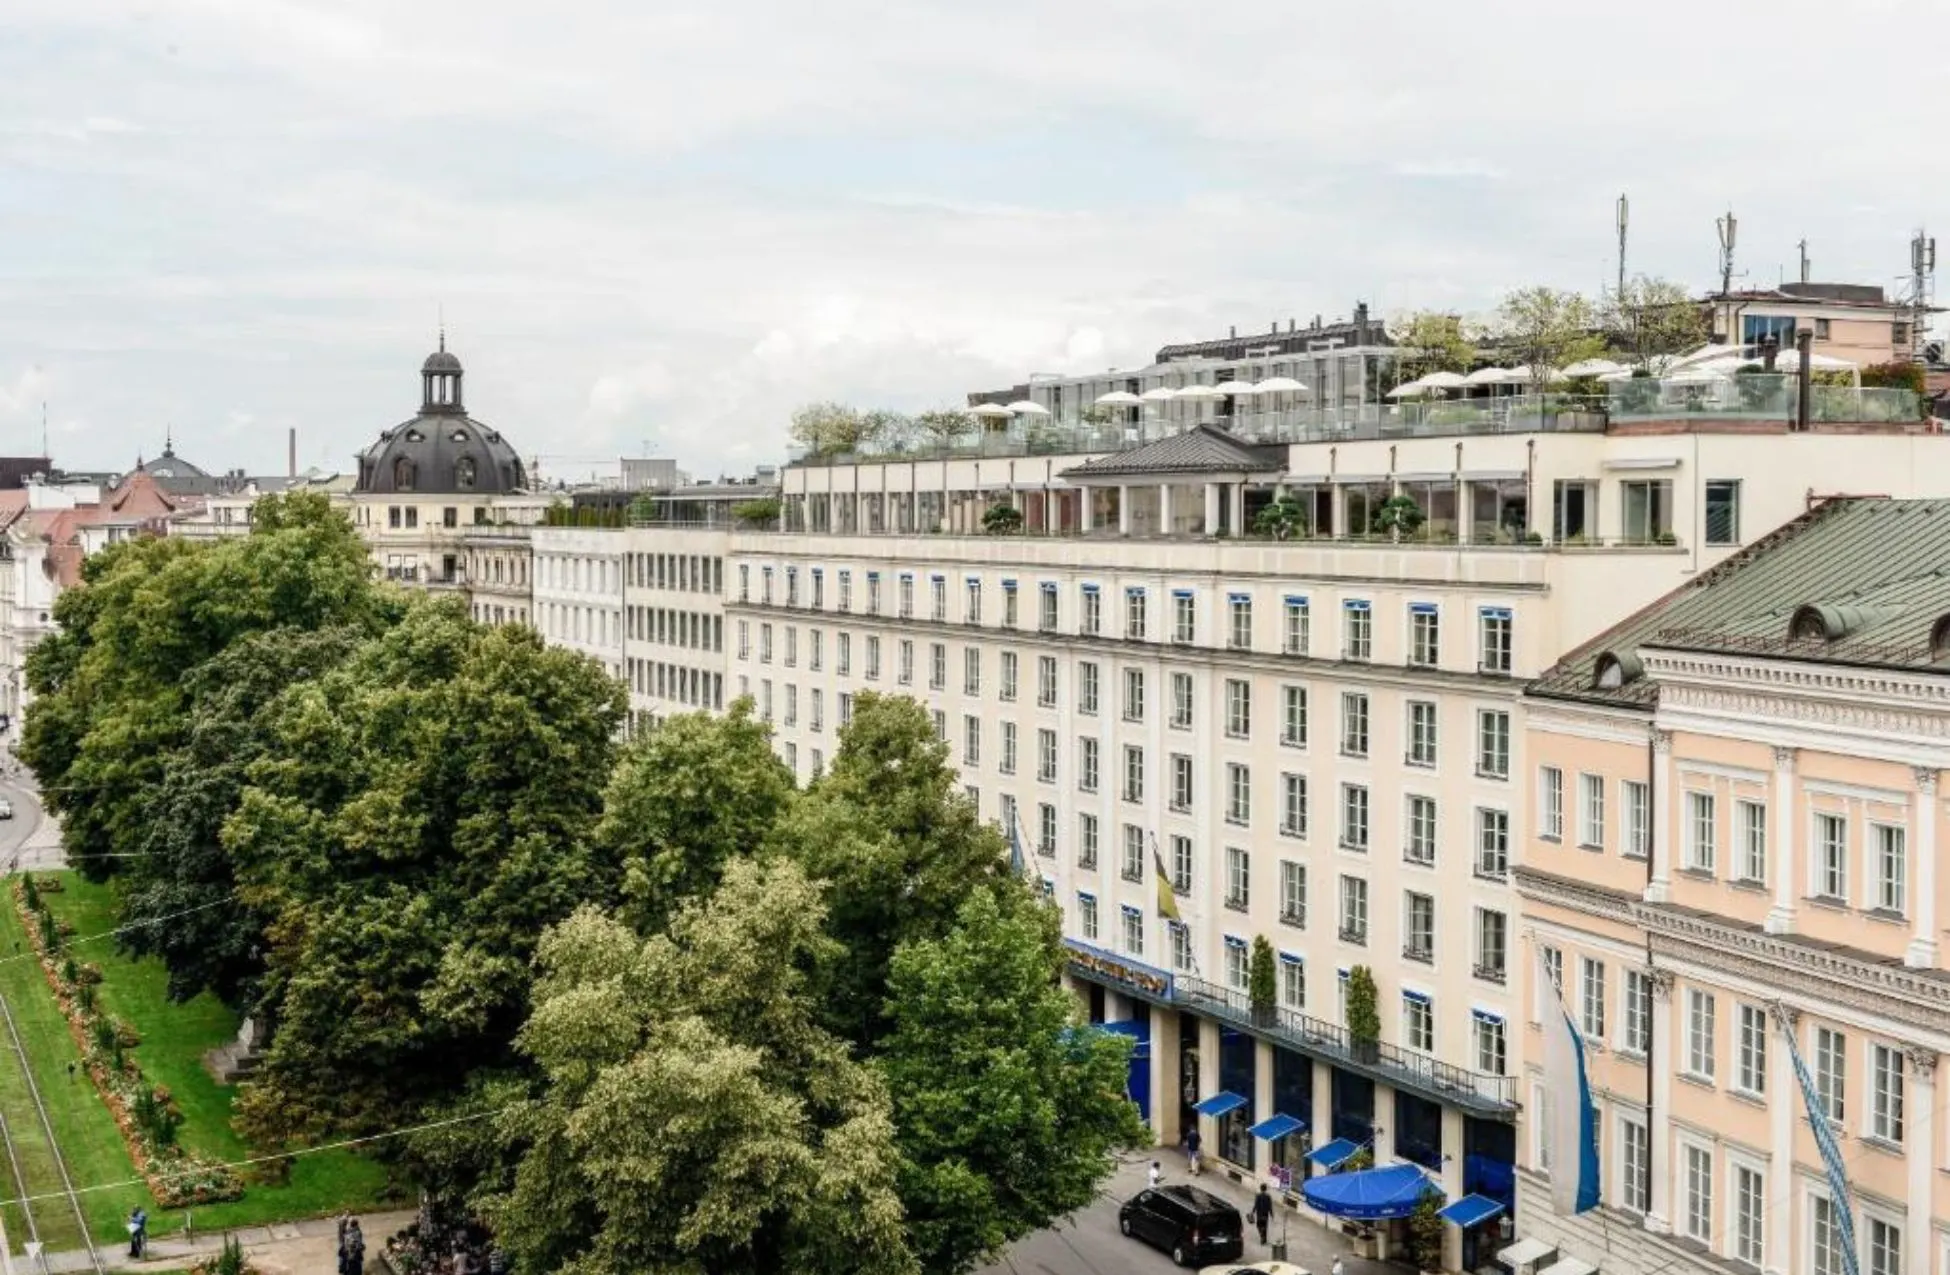 Hotel Bayerischer Hof - Best Hotels In Munich